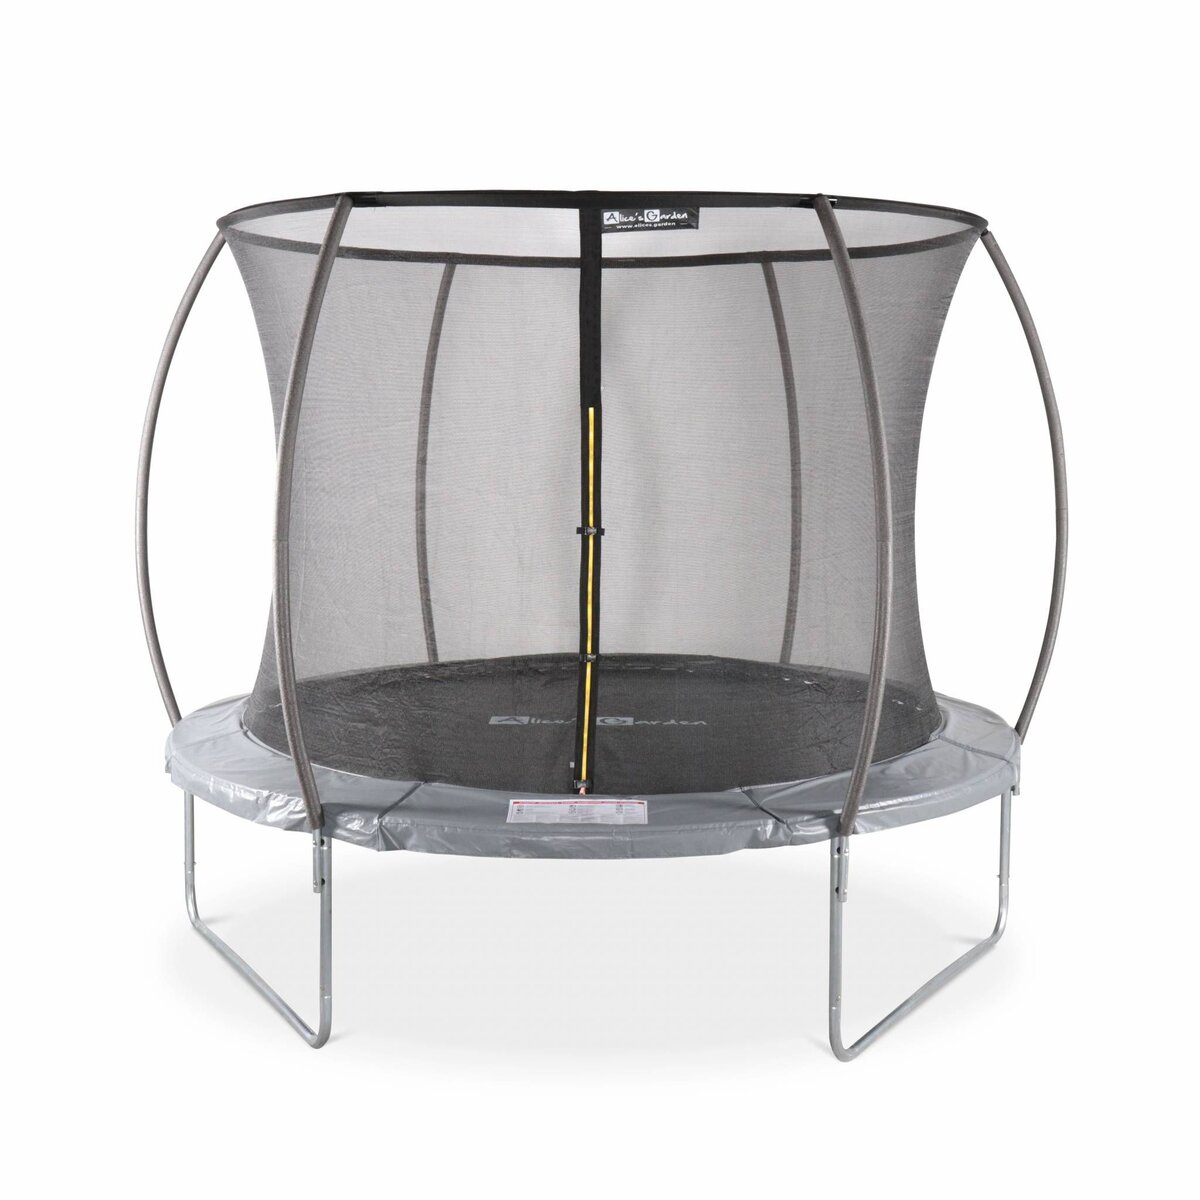 SWEEEK Trampoline rond Ø 305cm gris avec filet de protection intérieur - Mars Inner – Nouveau modèle - trampoline de jardin 3.05m 305 cm |Design | Qualité PRO | Normes EU